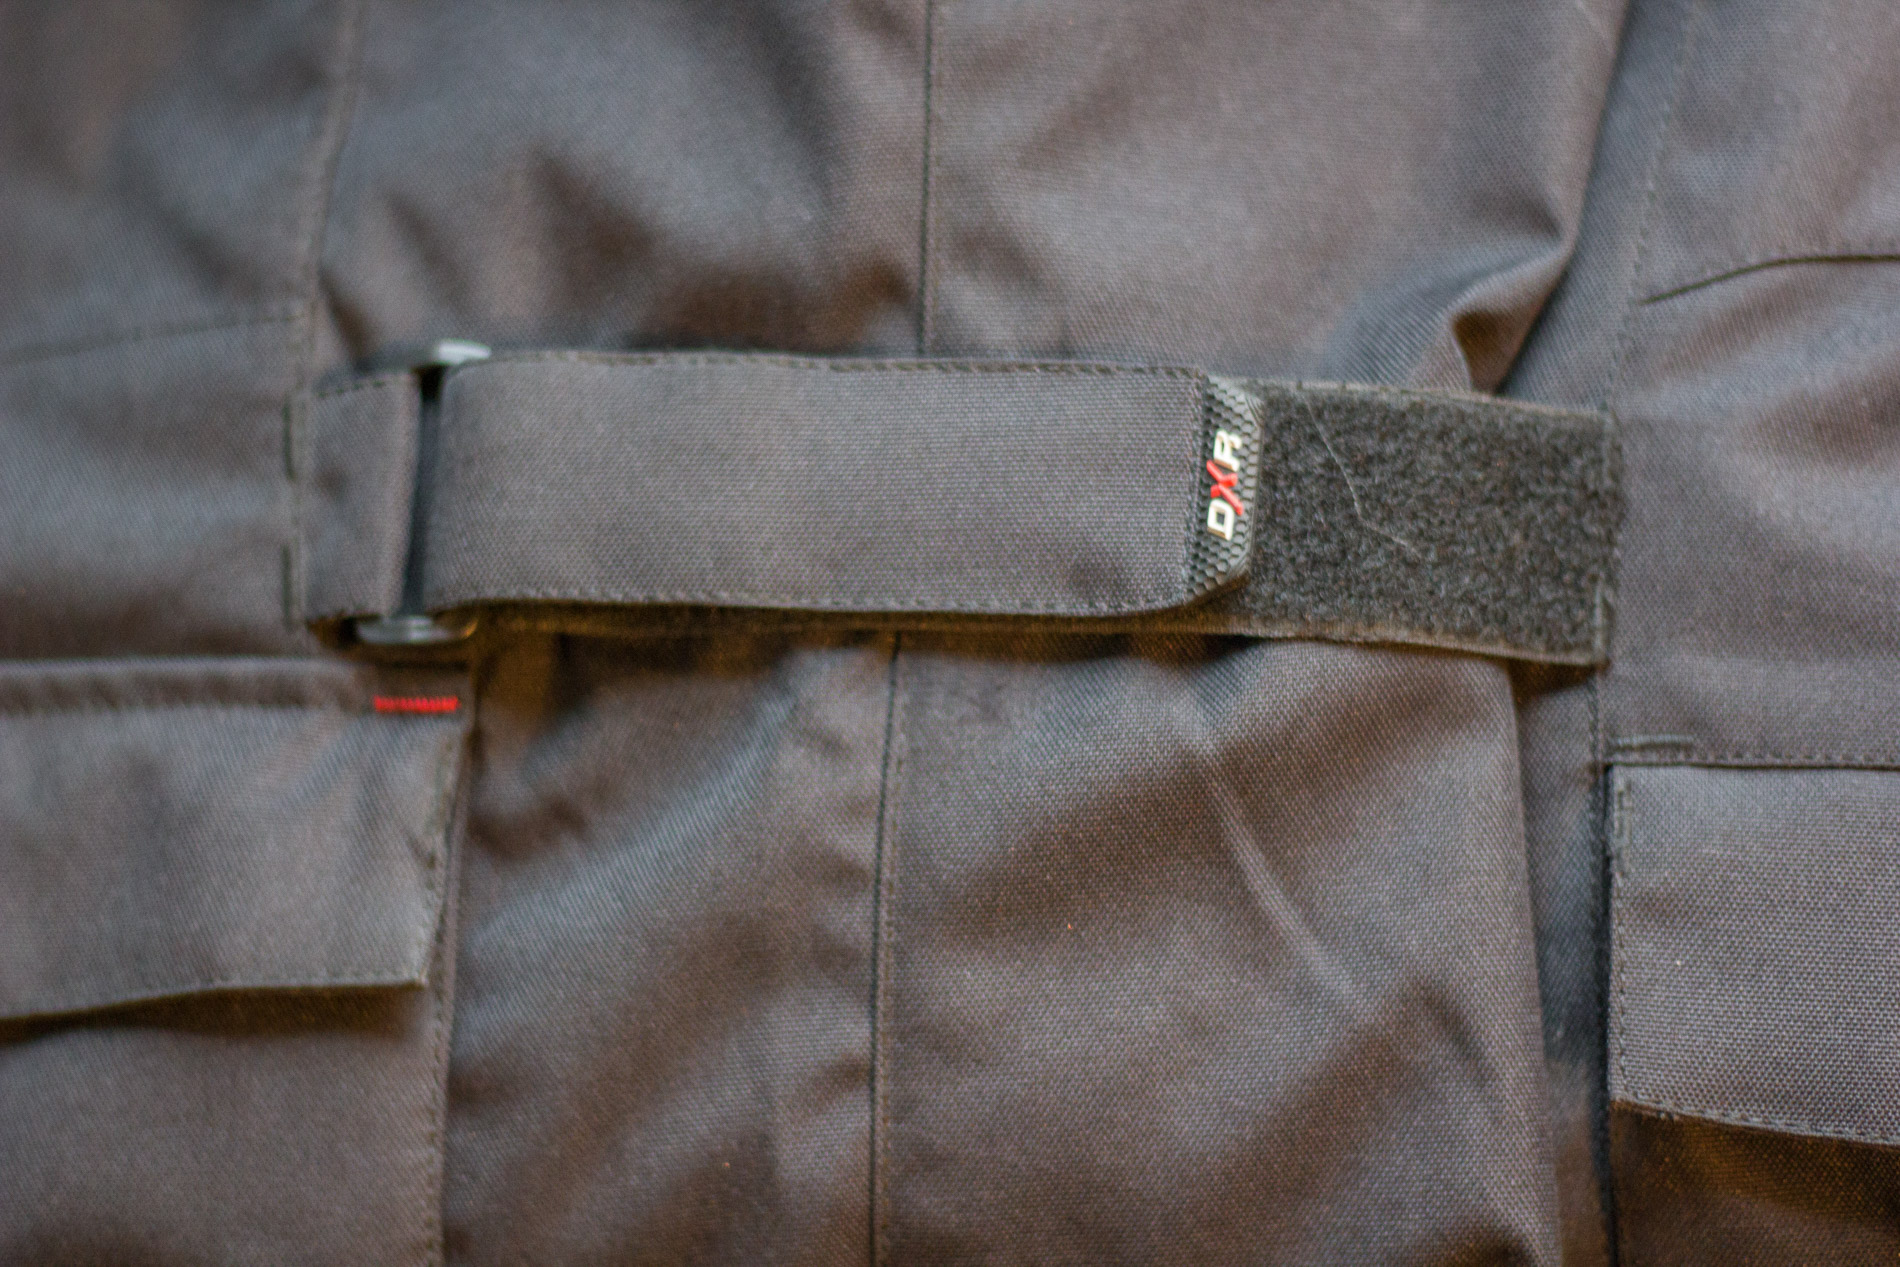 Tiras de velcro permiten ajustar la chaqueta de DXR Roadtrip todo el cuerpo